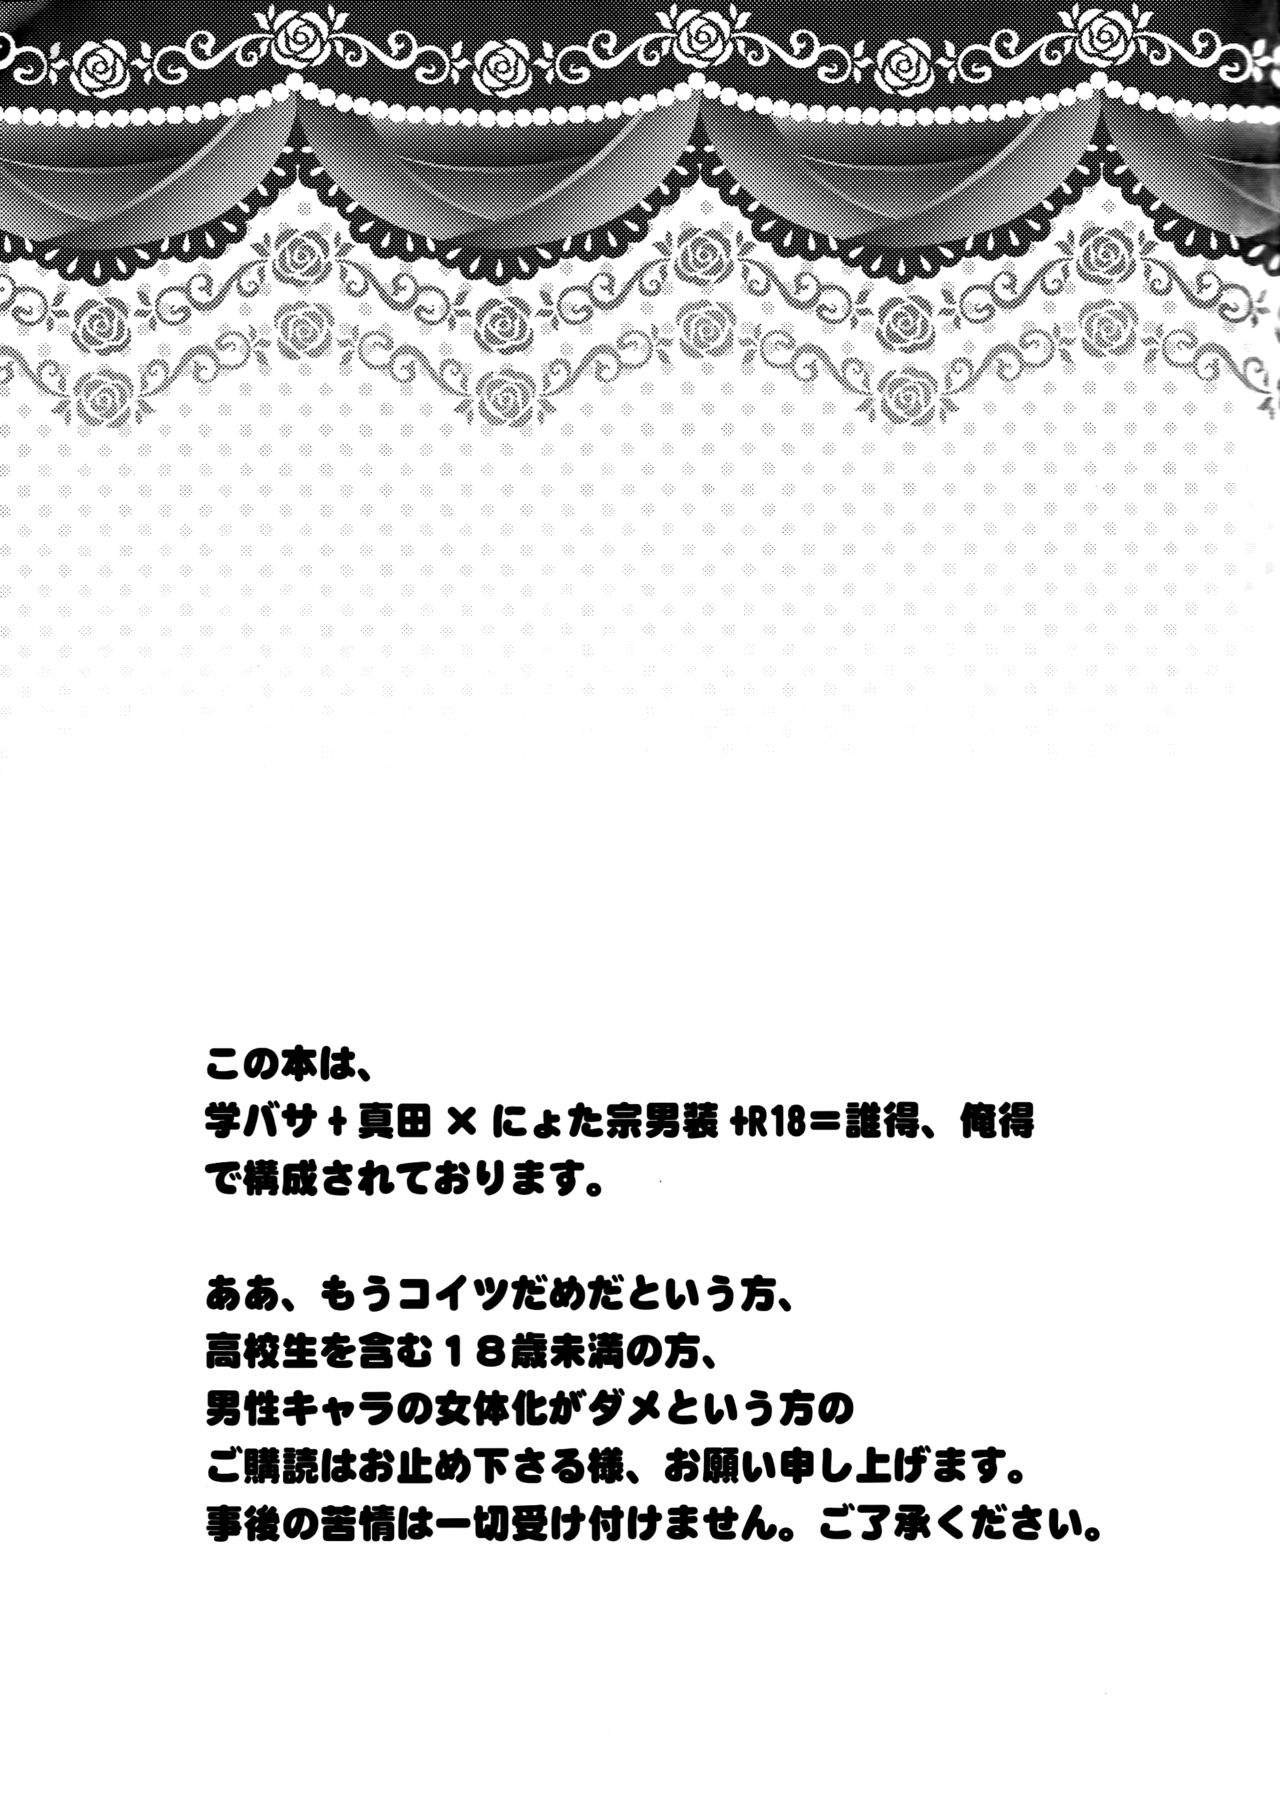 (SUPER19) [YUIMARI Z! (Aizawa Yuito)] Lovely Fighter (Sengoku Basara) [English] [biribiri] (SUPER19) [YUIMARI Z! (藍沢ユイト)] Lovely Fighter (戦国BASARA) [英訳]